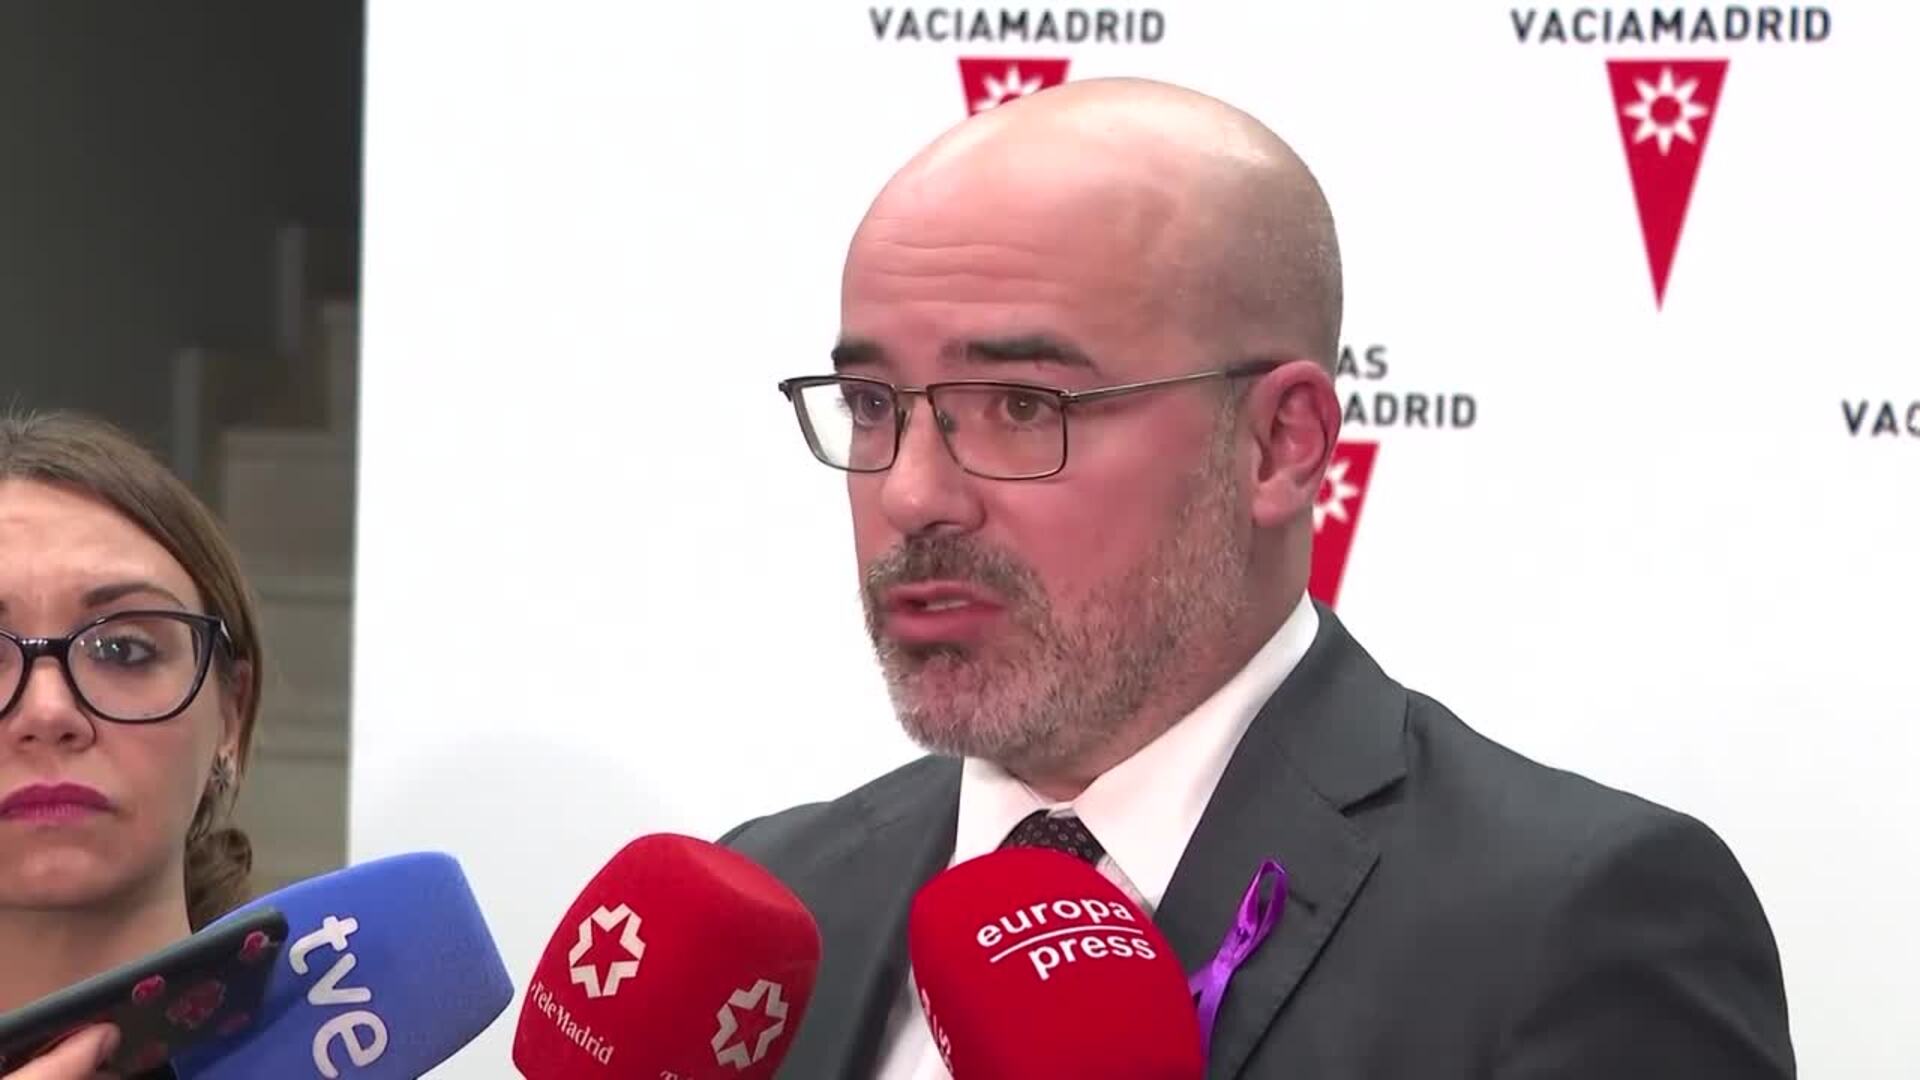 El delegado de Gobierno de Madrid insta a las víctimas de violencia de género a que denuncien